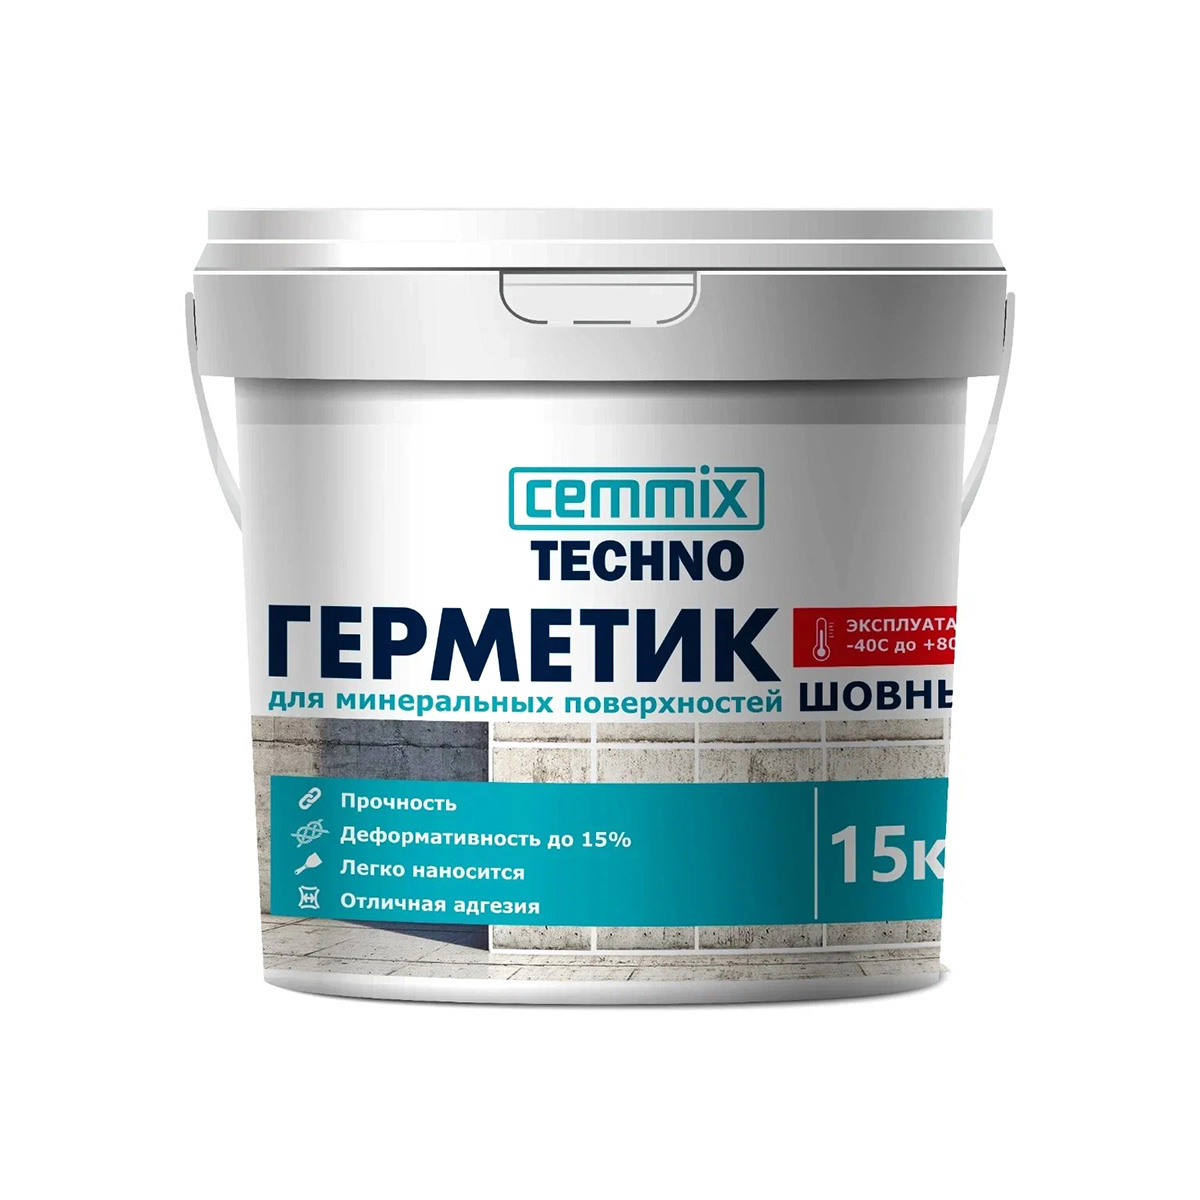 Герметик шовный для минеральных поверхностей Cemmix, акриловый, 15 кг, белый акриловый герметик cemmix